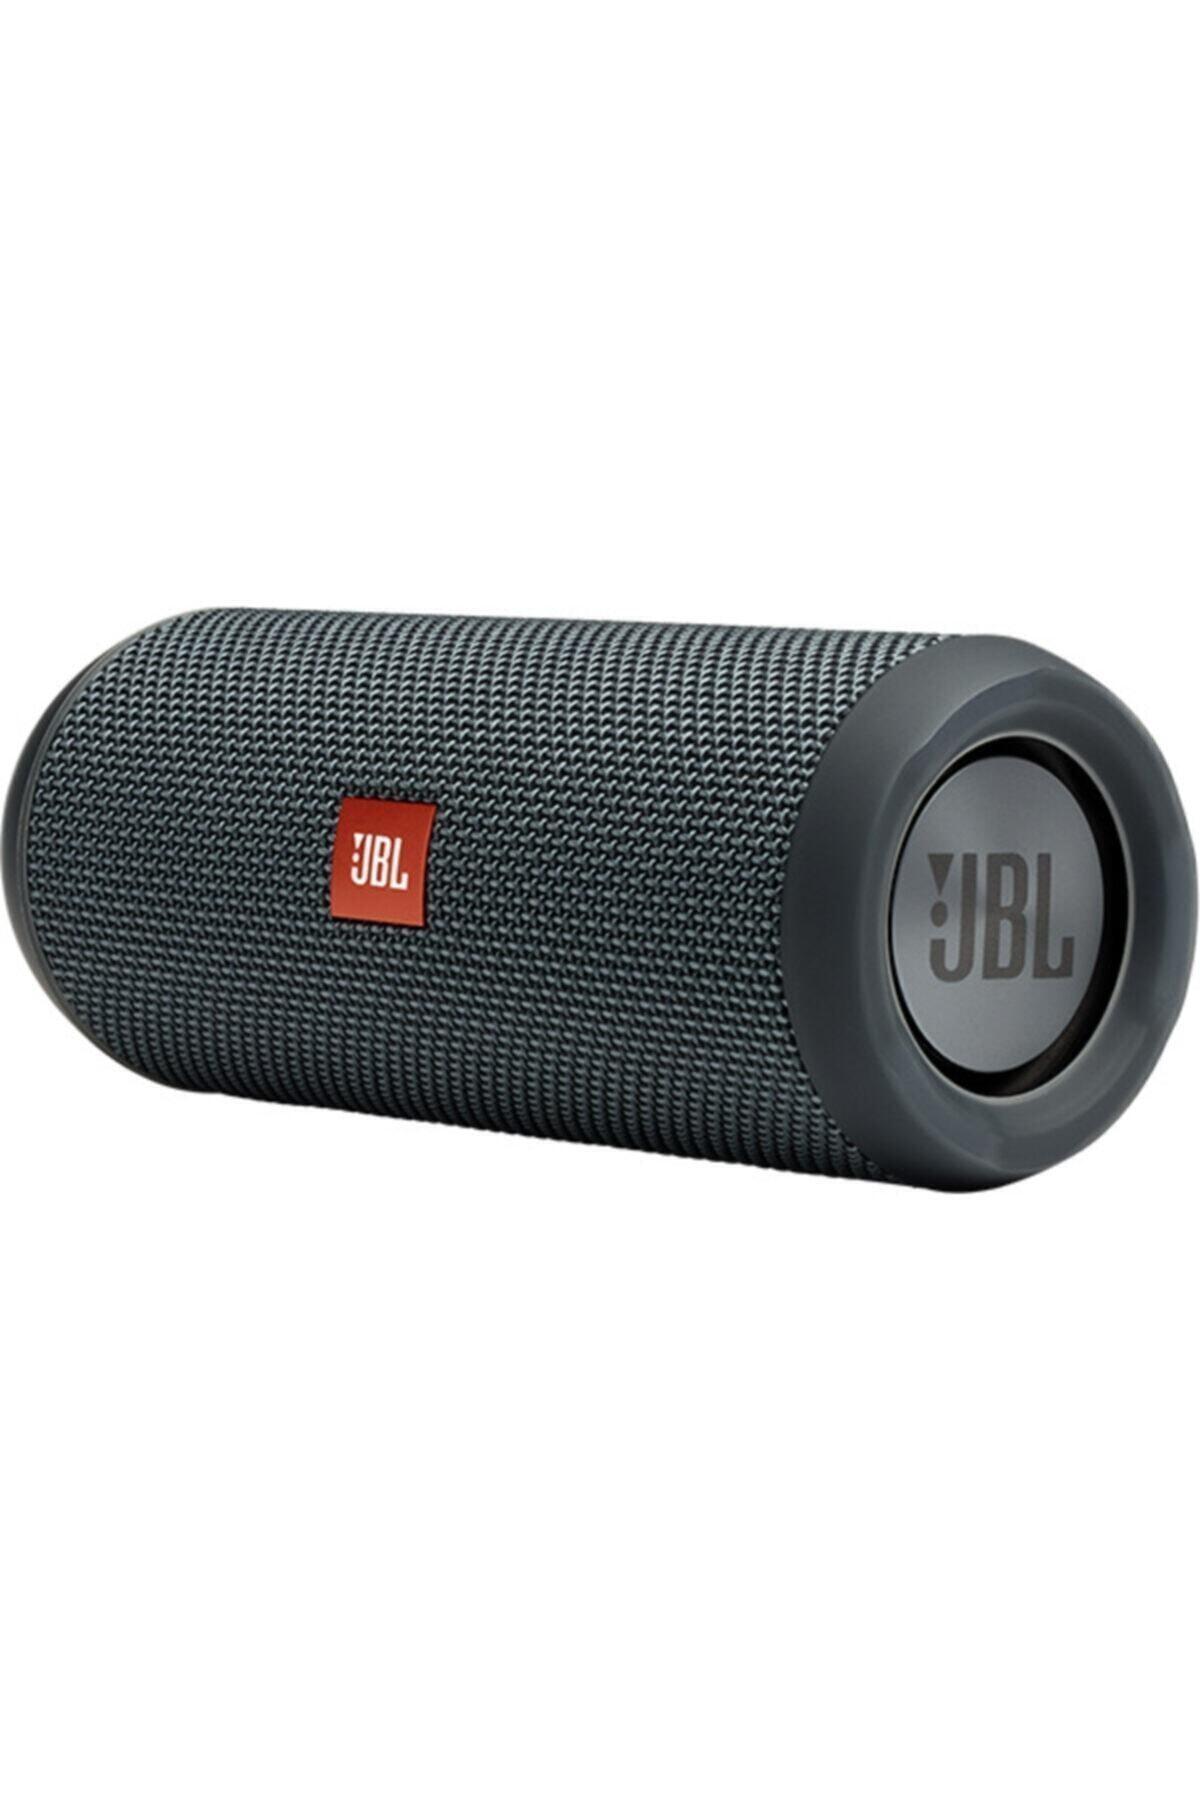 JBL Flip Essential 899TL